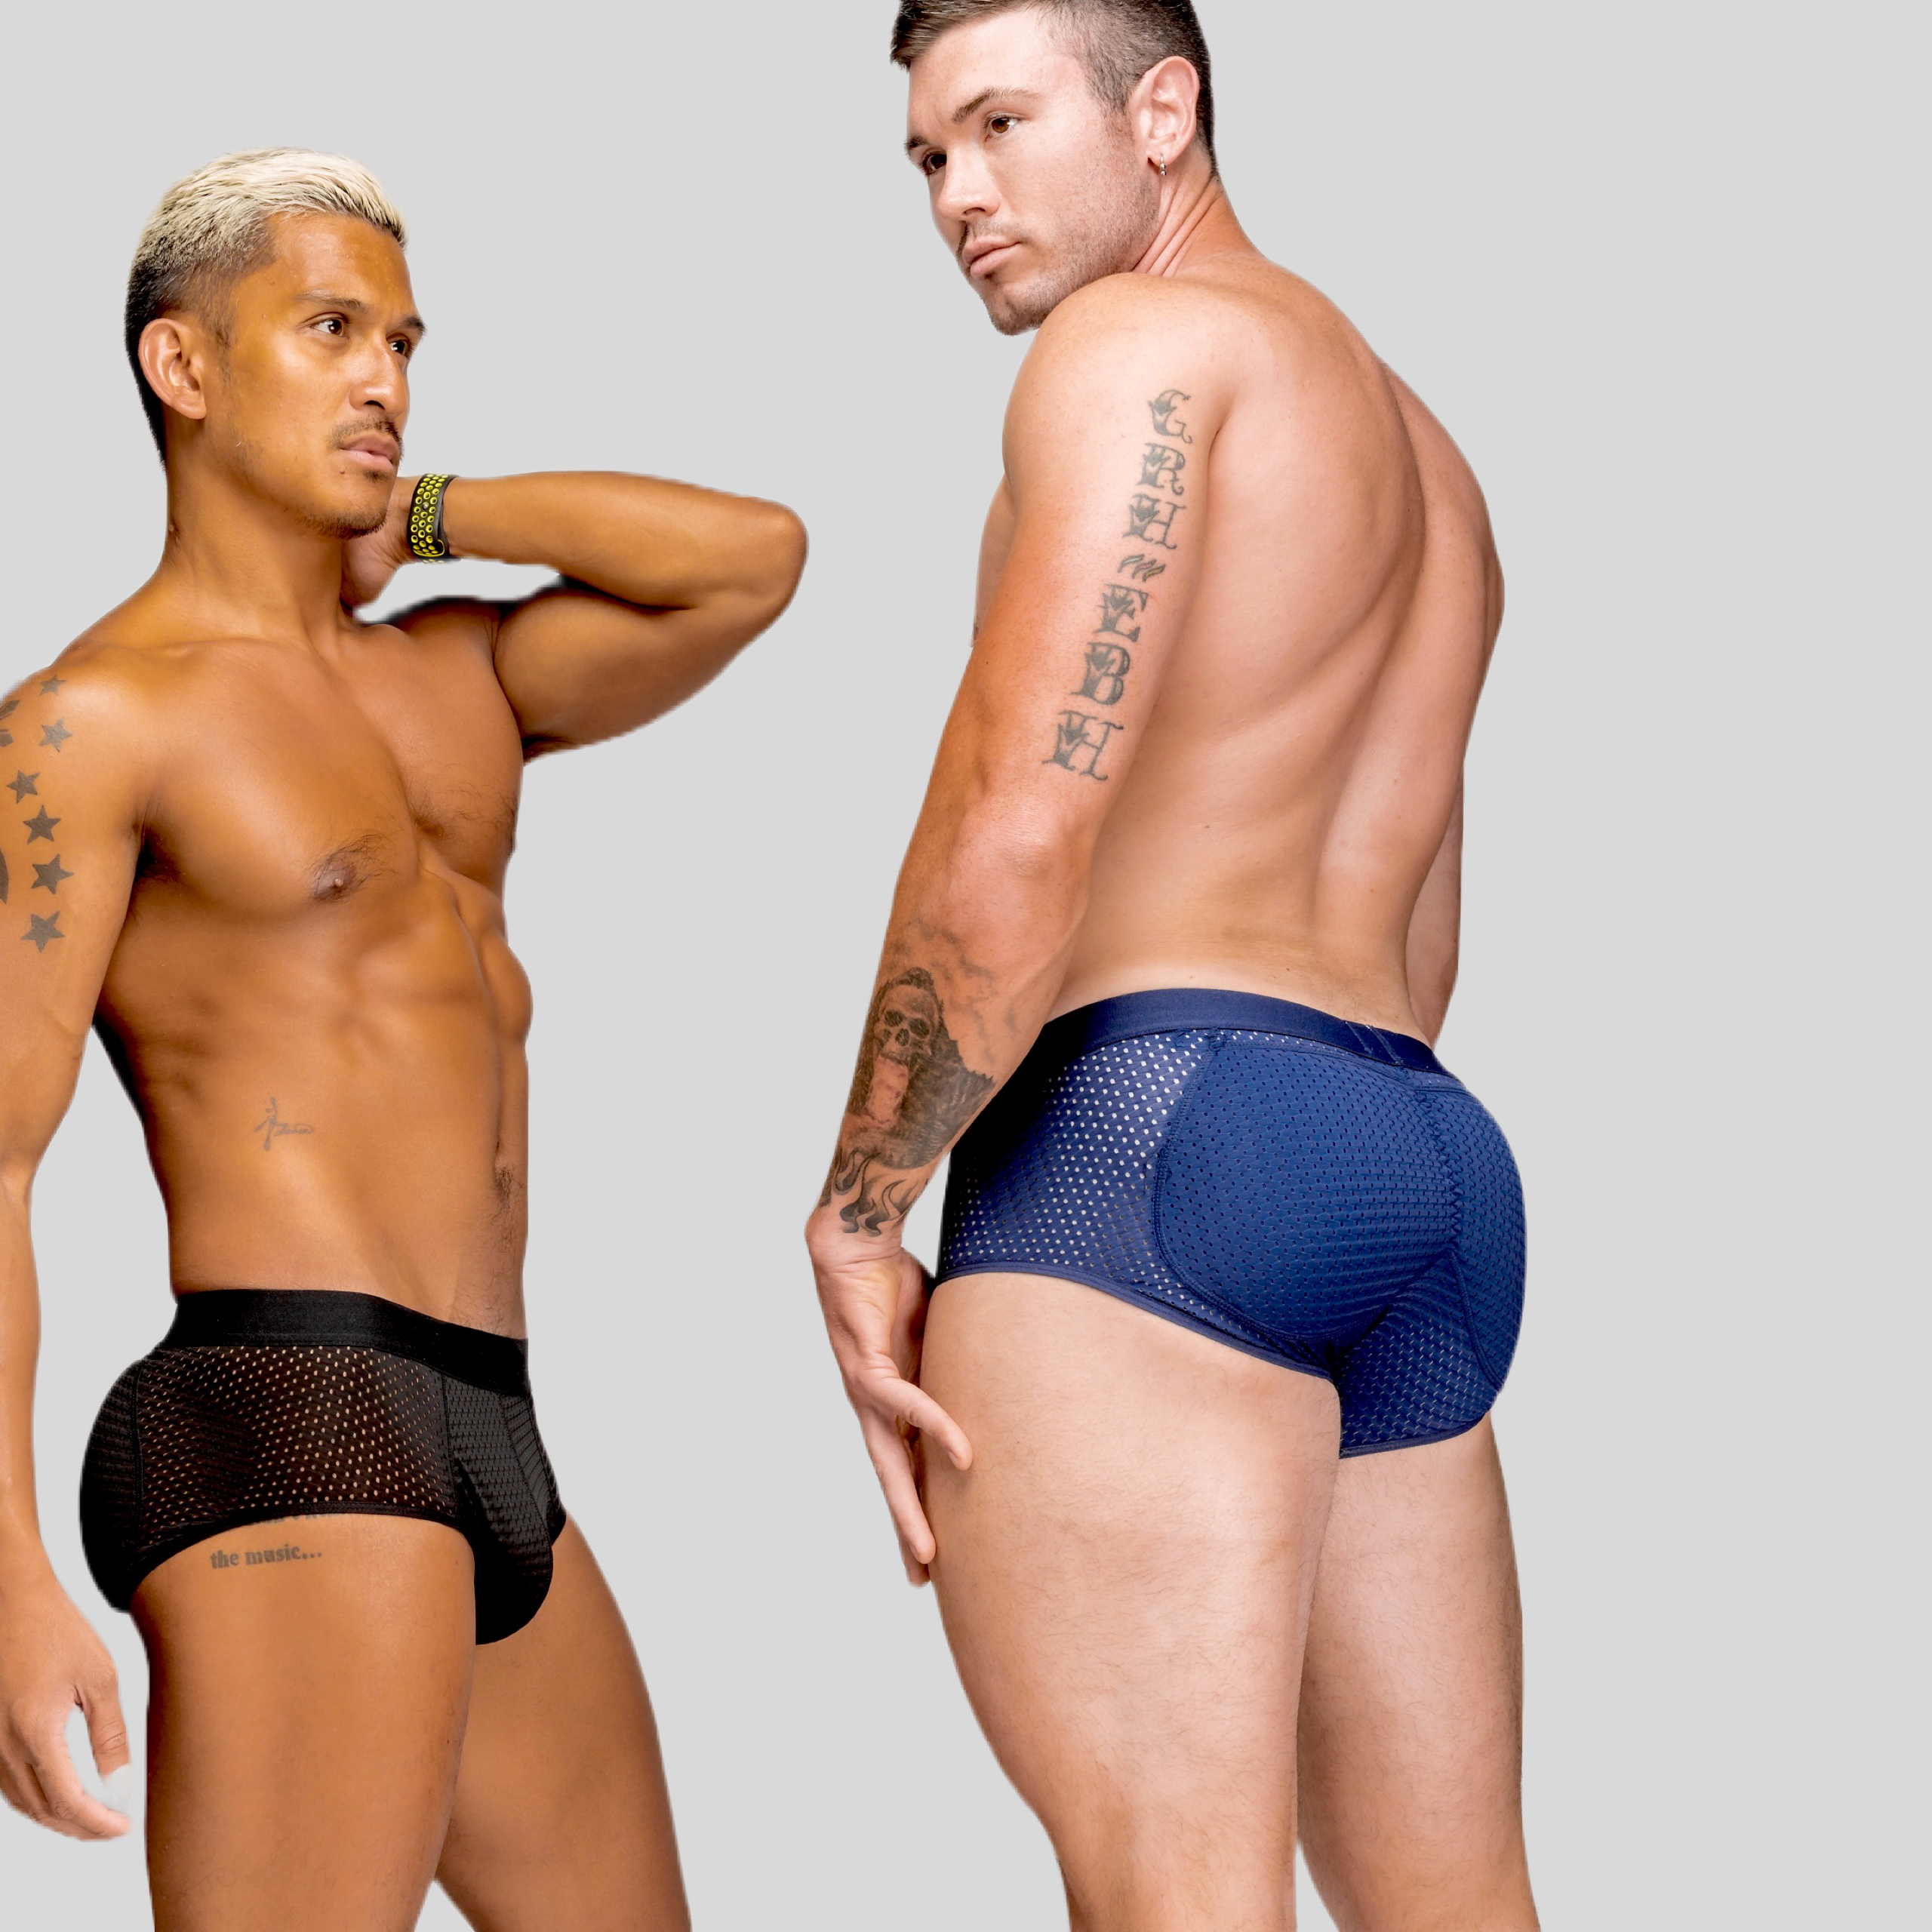 Men's Butt Enhancing Underwear & Pads- Butt shaper Butt Booster LLC